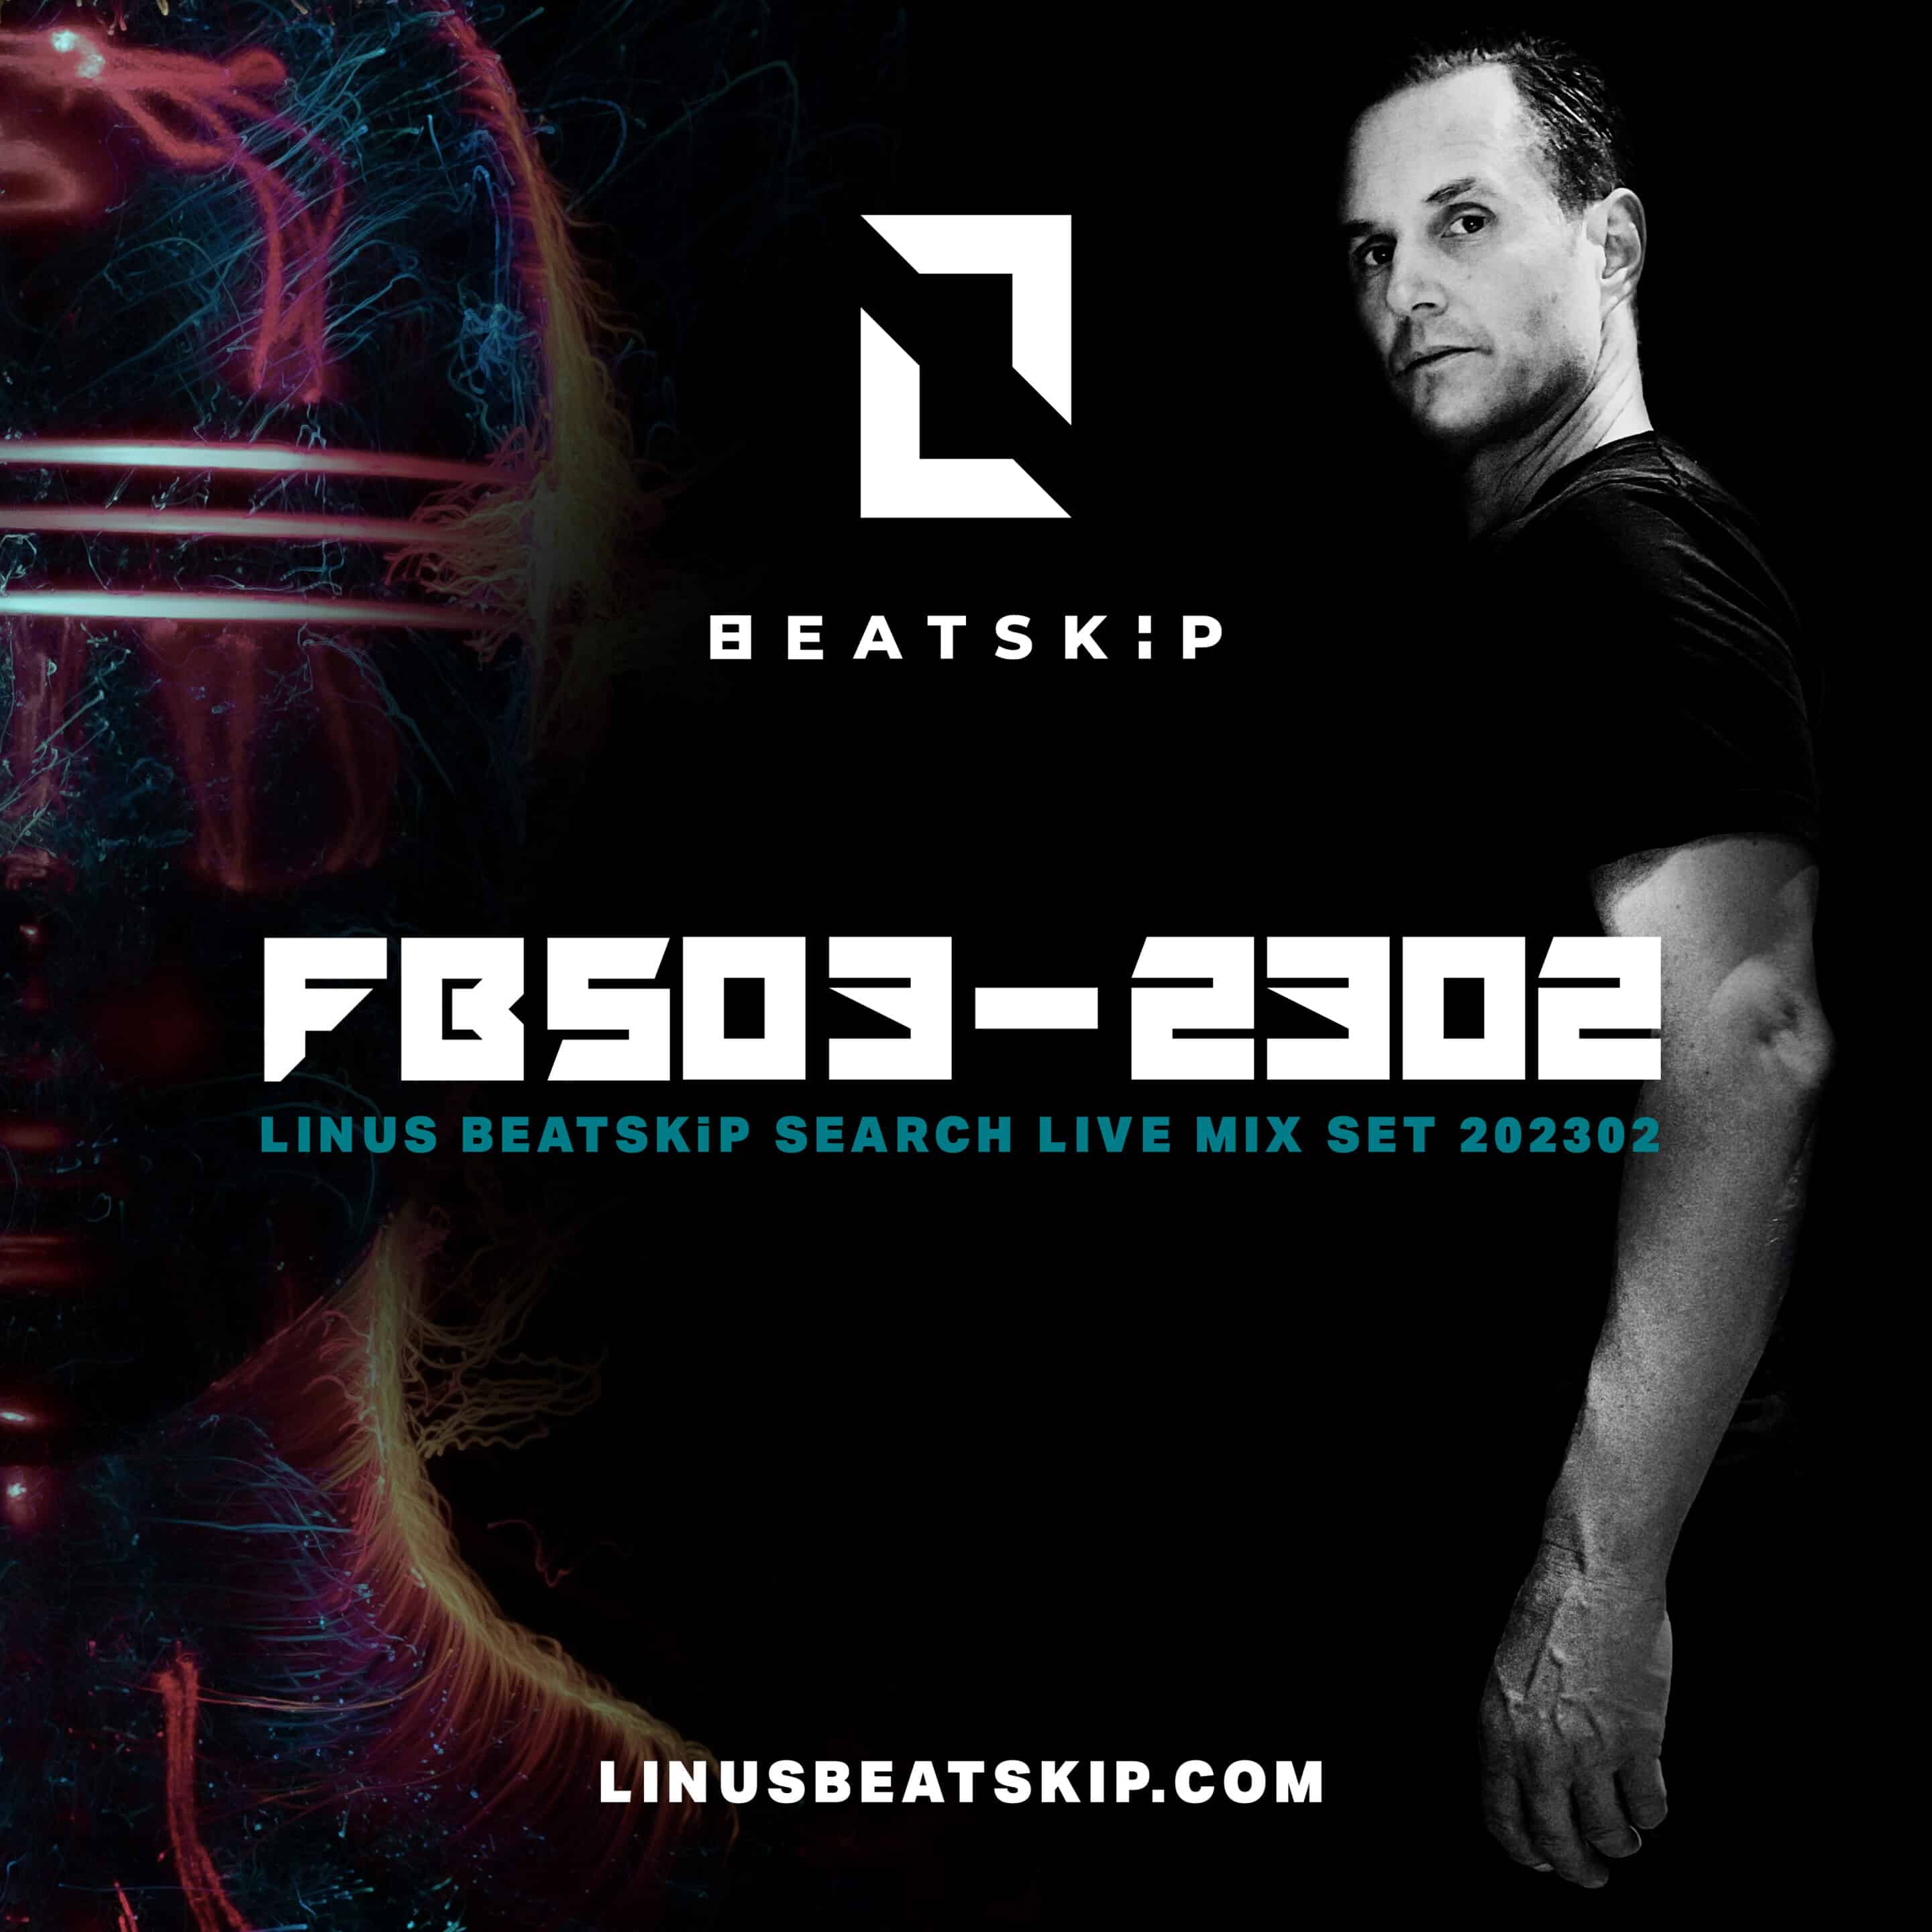 DJ Mix from LINUS BEATSKiP - Full techno mix FBS03-2302 Best techno for every pleasure 